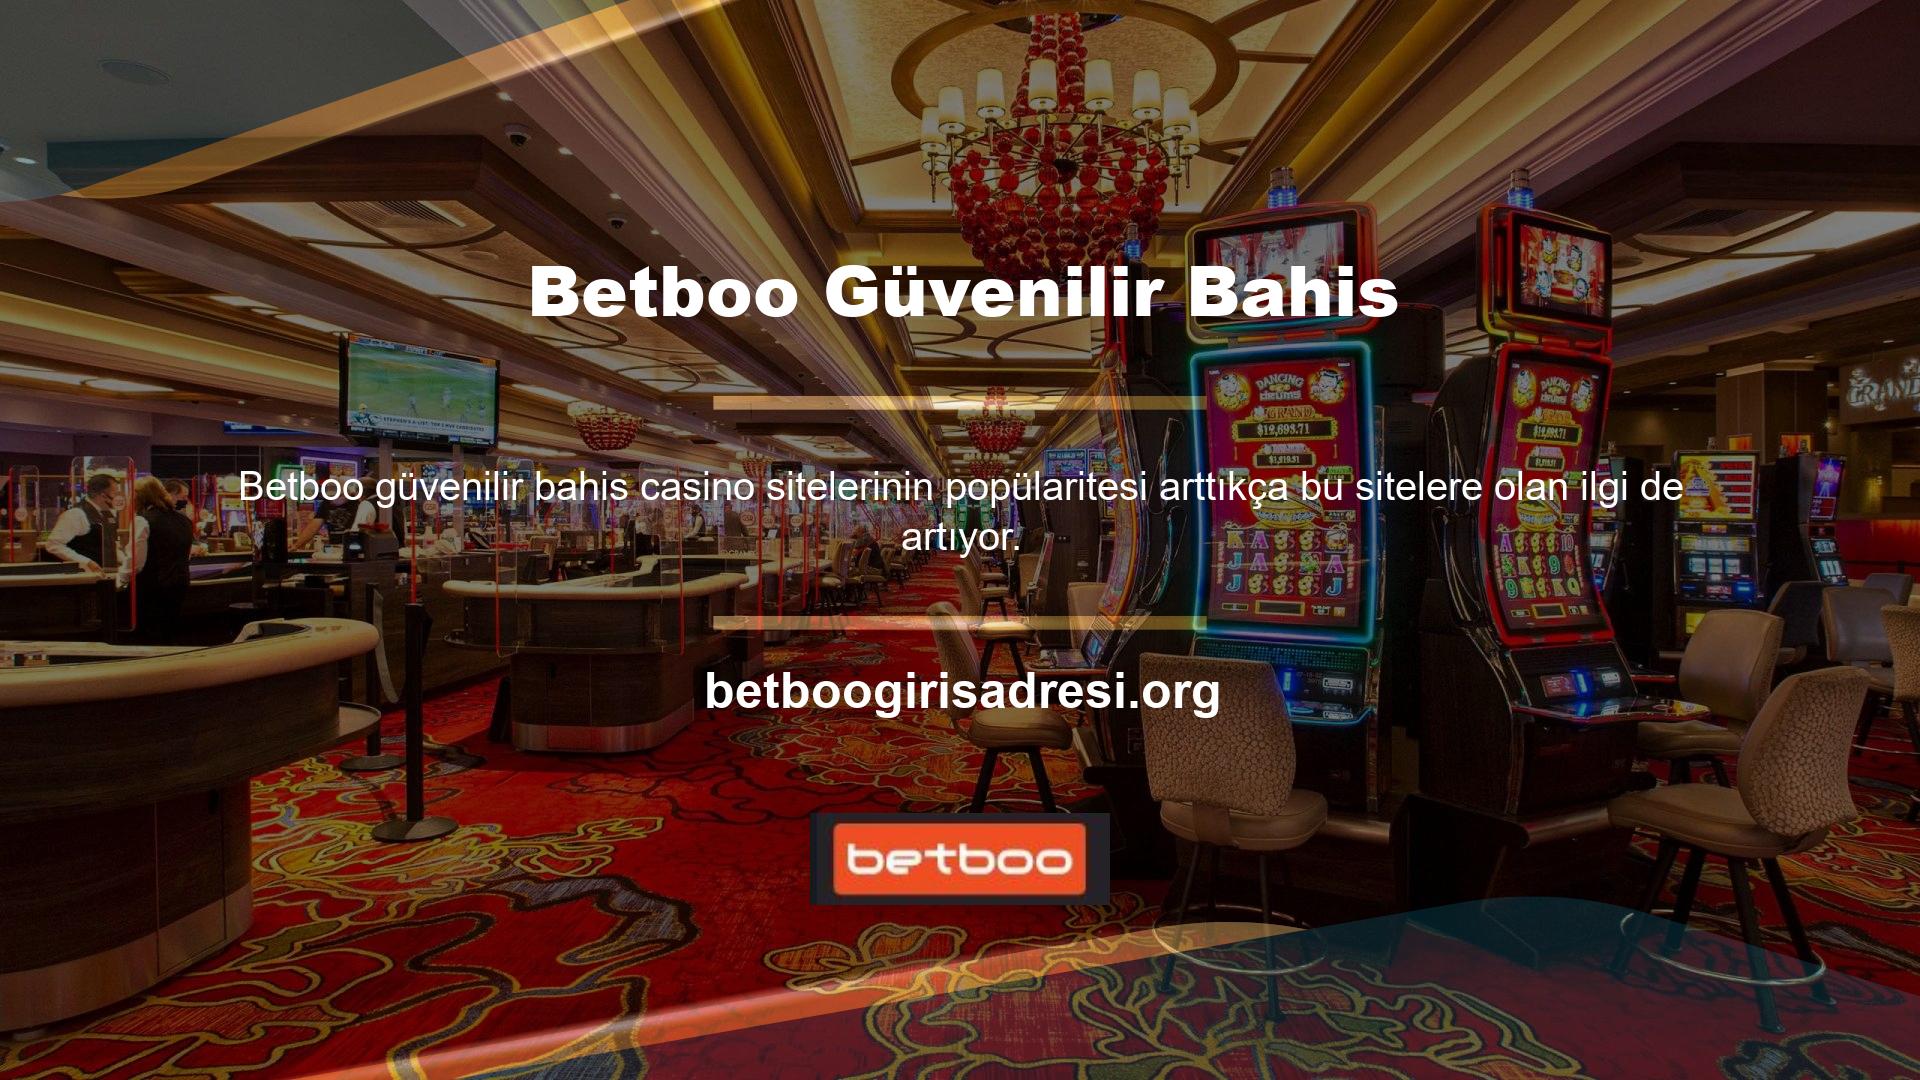 Ancak kullanıcılar, sanal casino sitelerinin güvenilirliği konusunda endişe duymaktadır